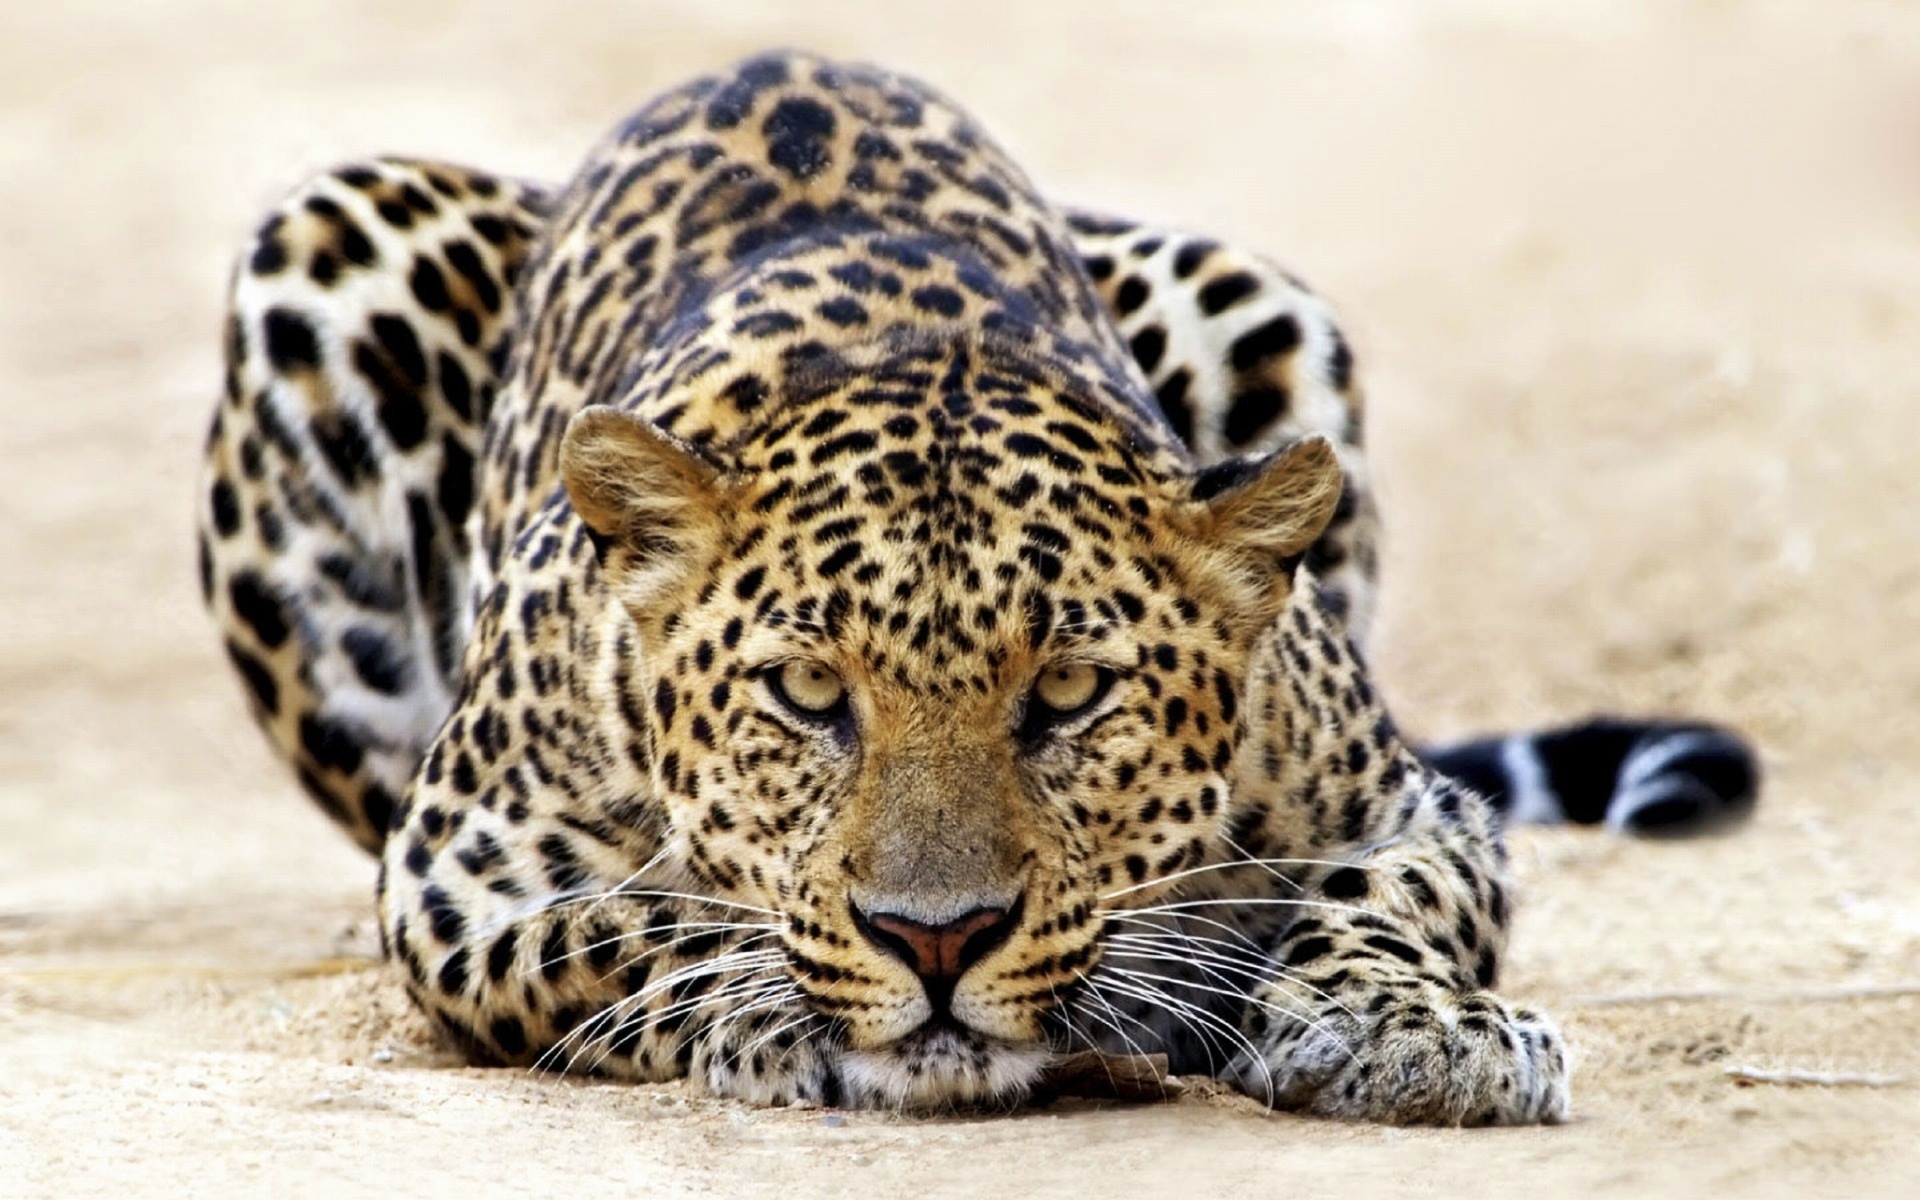 Leopard Staring8105911901 - Leopard Staring - Staring, Leopard